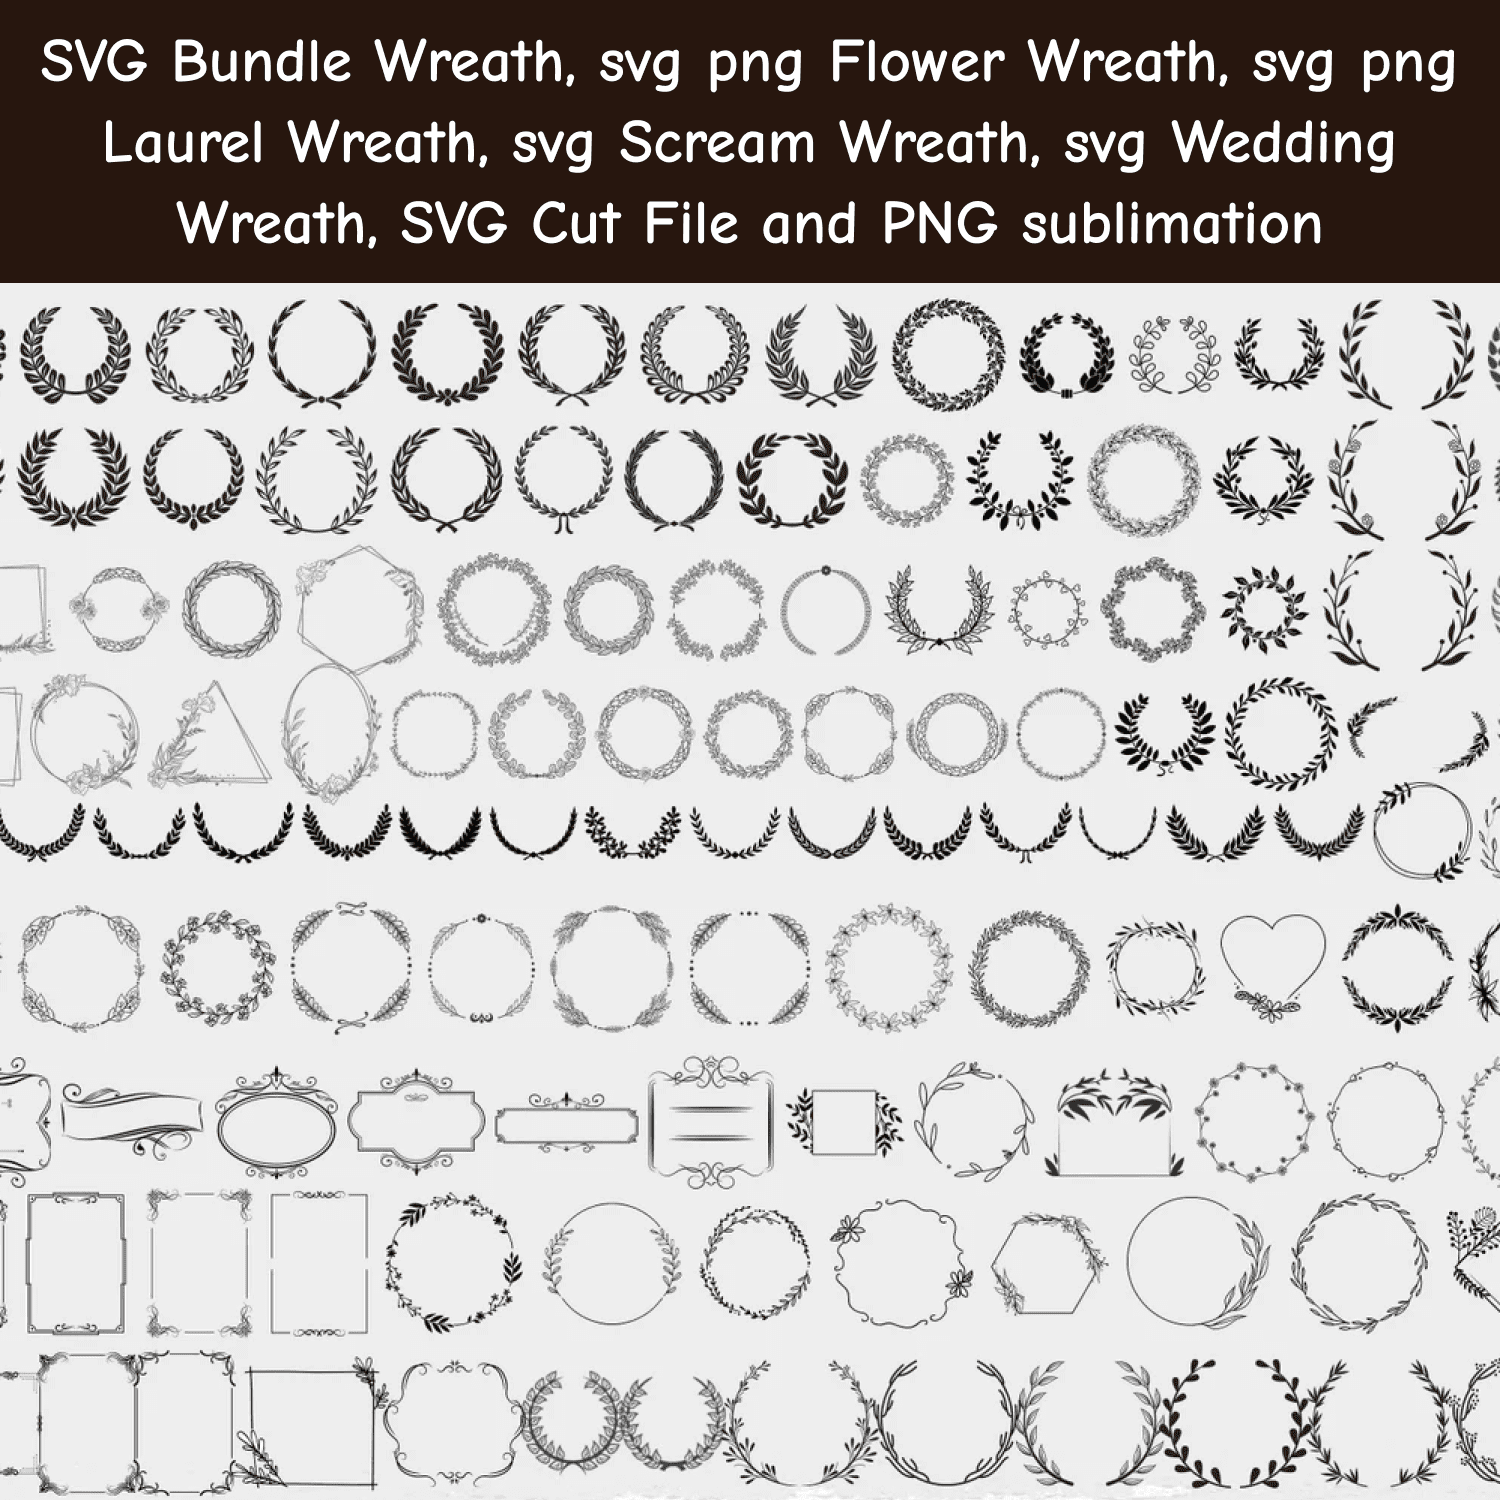 Wreath SVG Bundle cover.